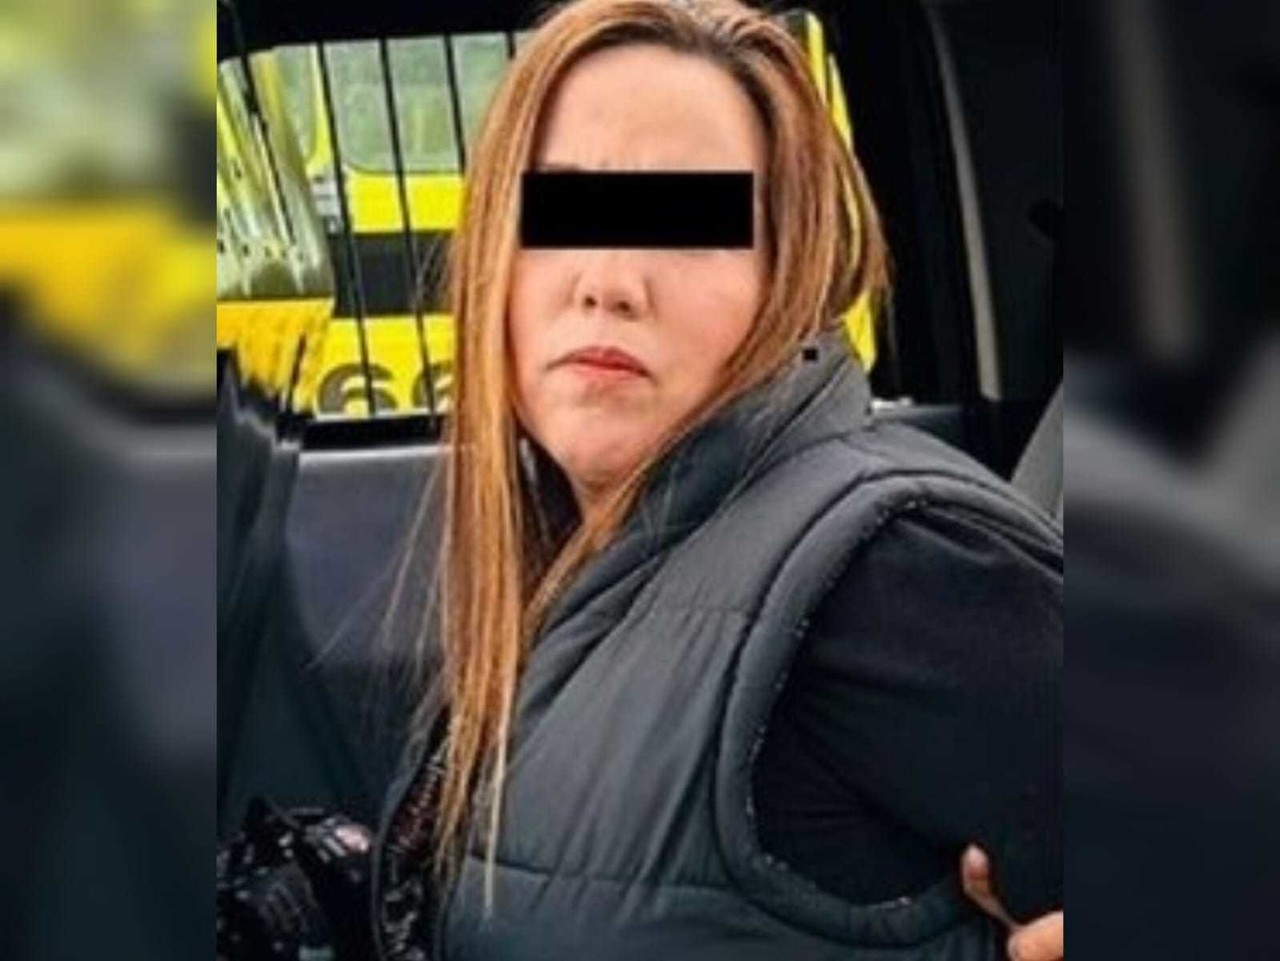 La mujer fue trasladada a las instalaciones de la Policía de Monterrey, donde quedó a disposición del Ministerio Público. Foto: Especial.